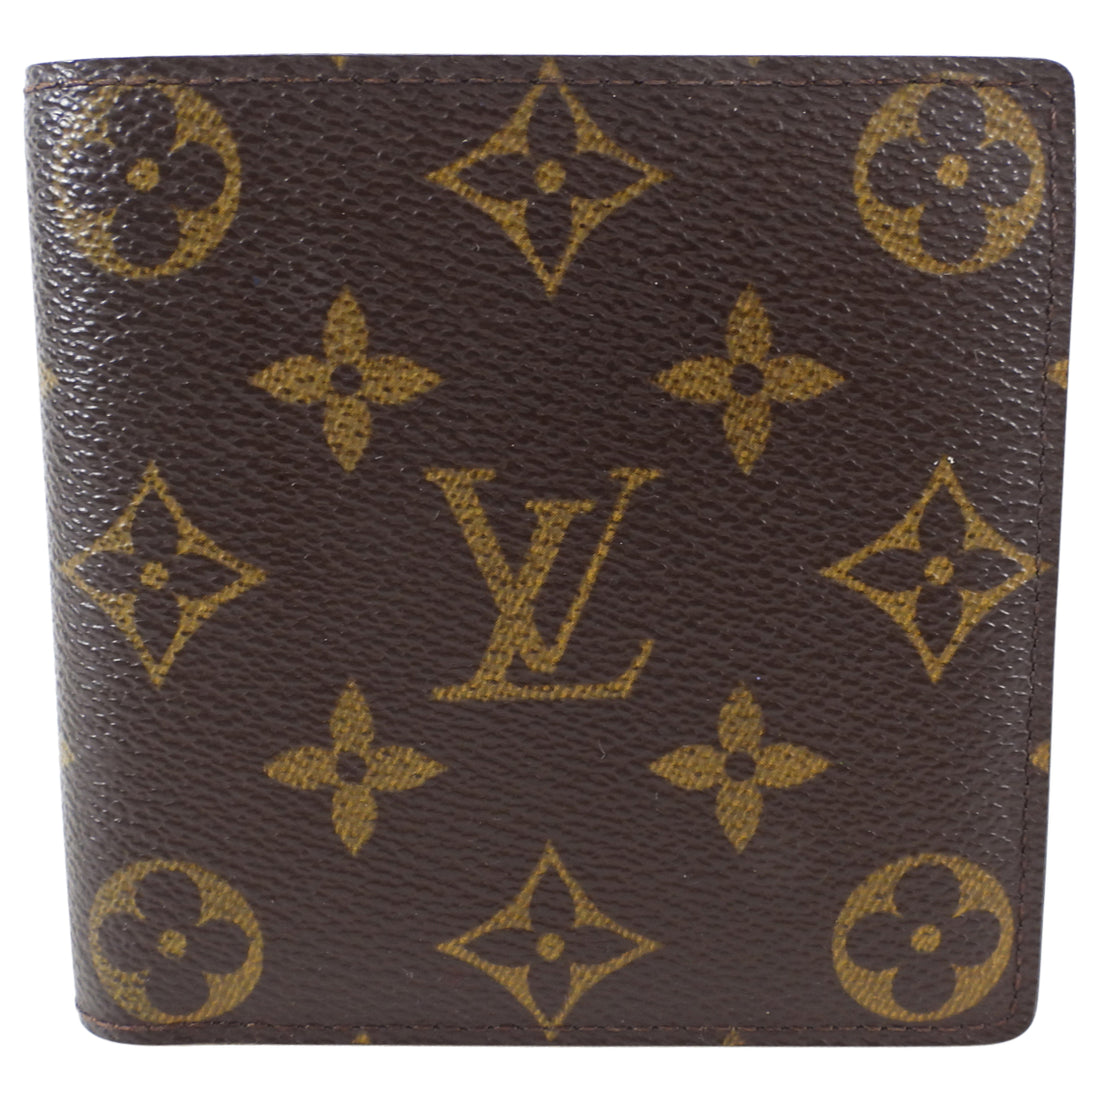 Wallet Biford Louis Vuitton, Men's Fashion, Watches & Accessories